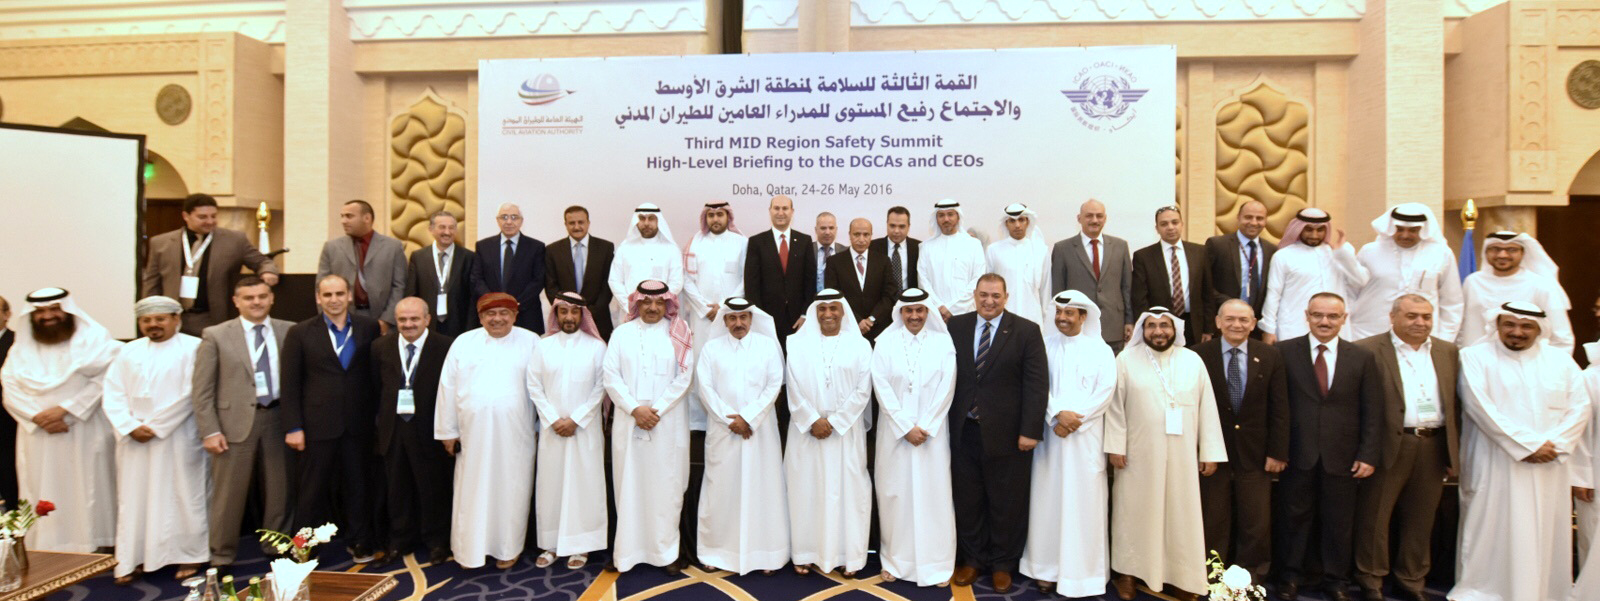 صورة جماعية للمشاركين في للاجتماع رفيع المستوى للمدراء العامين والرؤساء التنفيذيين لهيئات الطيران المدني في منطقة الشرق الاوسط